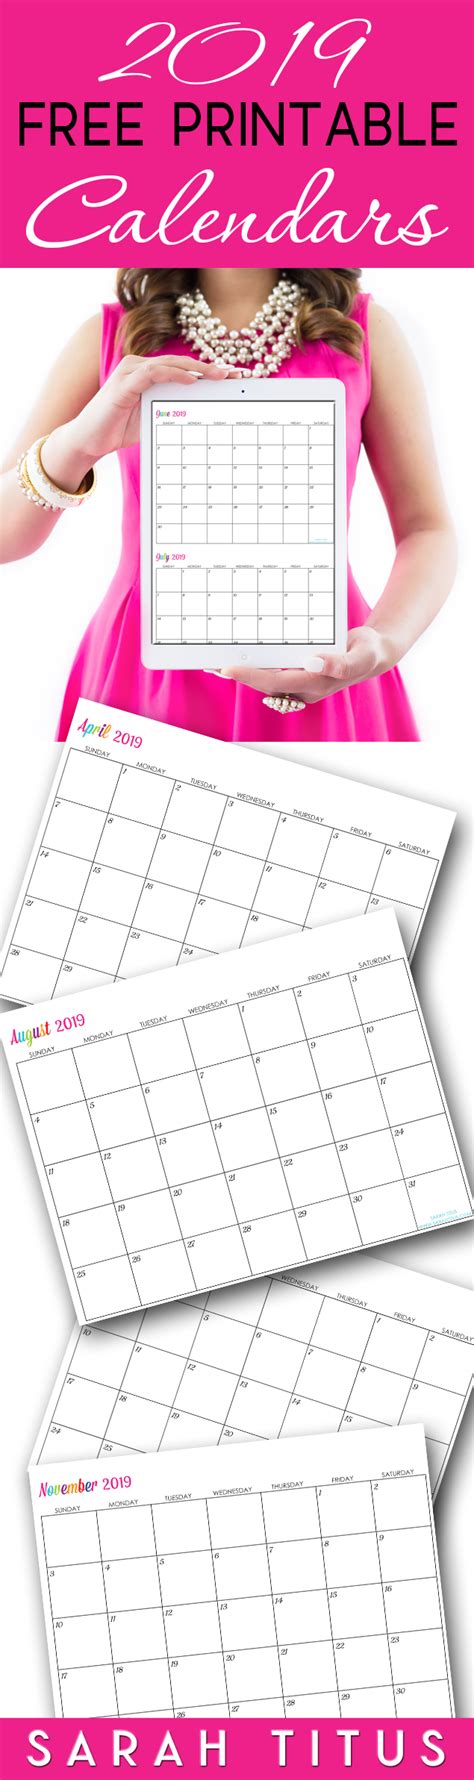 Sarah Titus Calendar Calendar For Planning